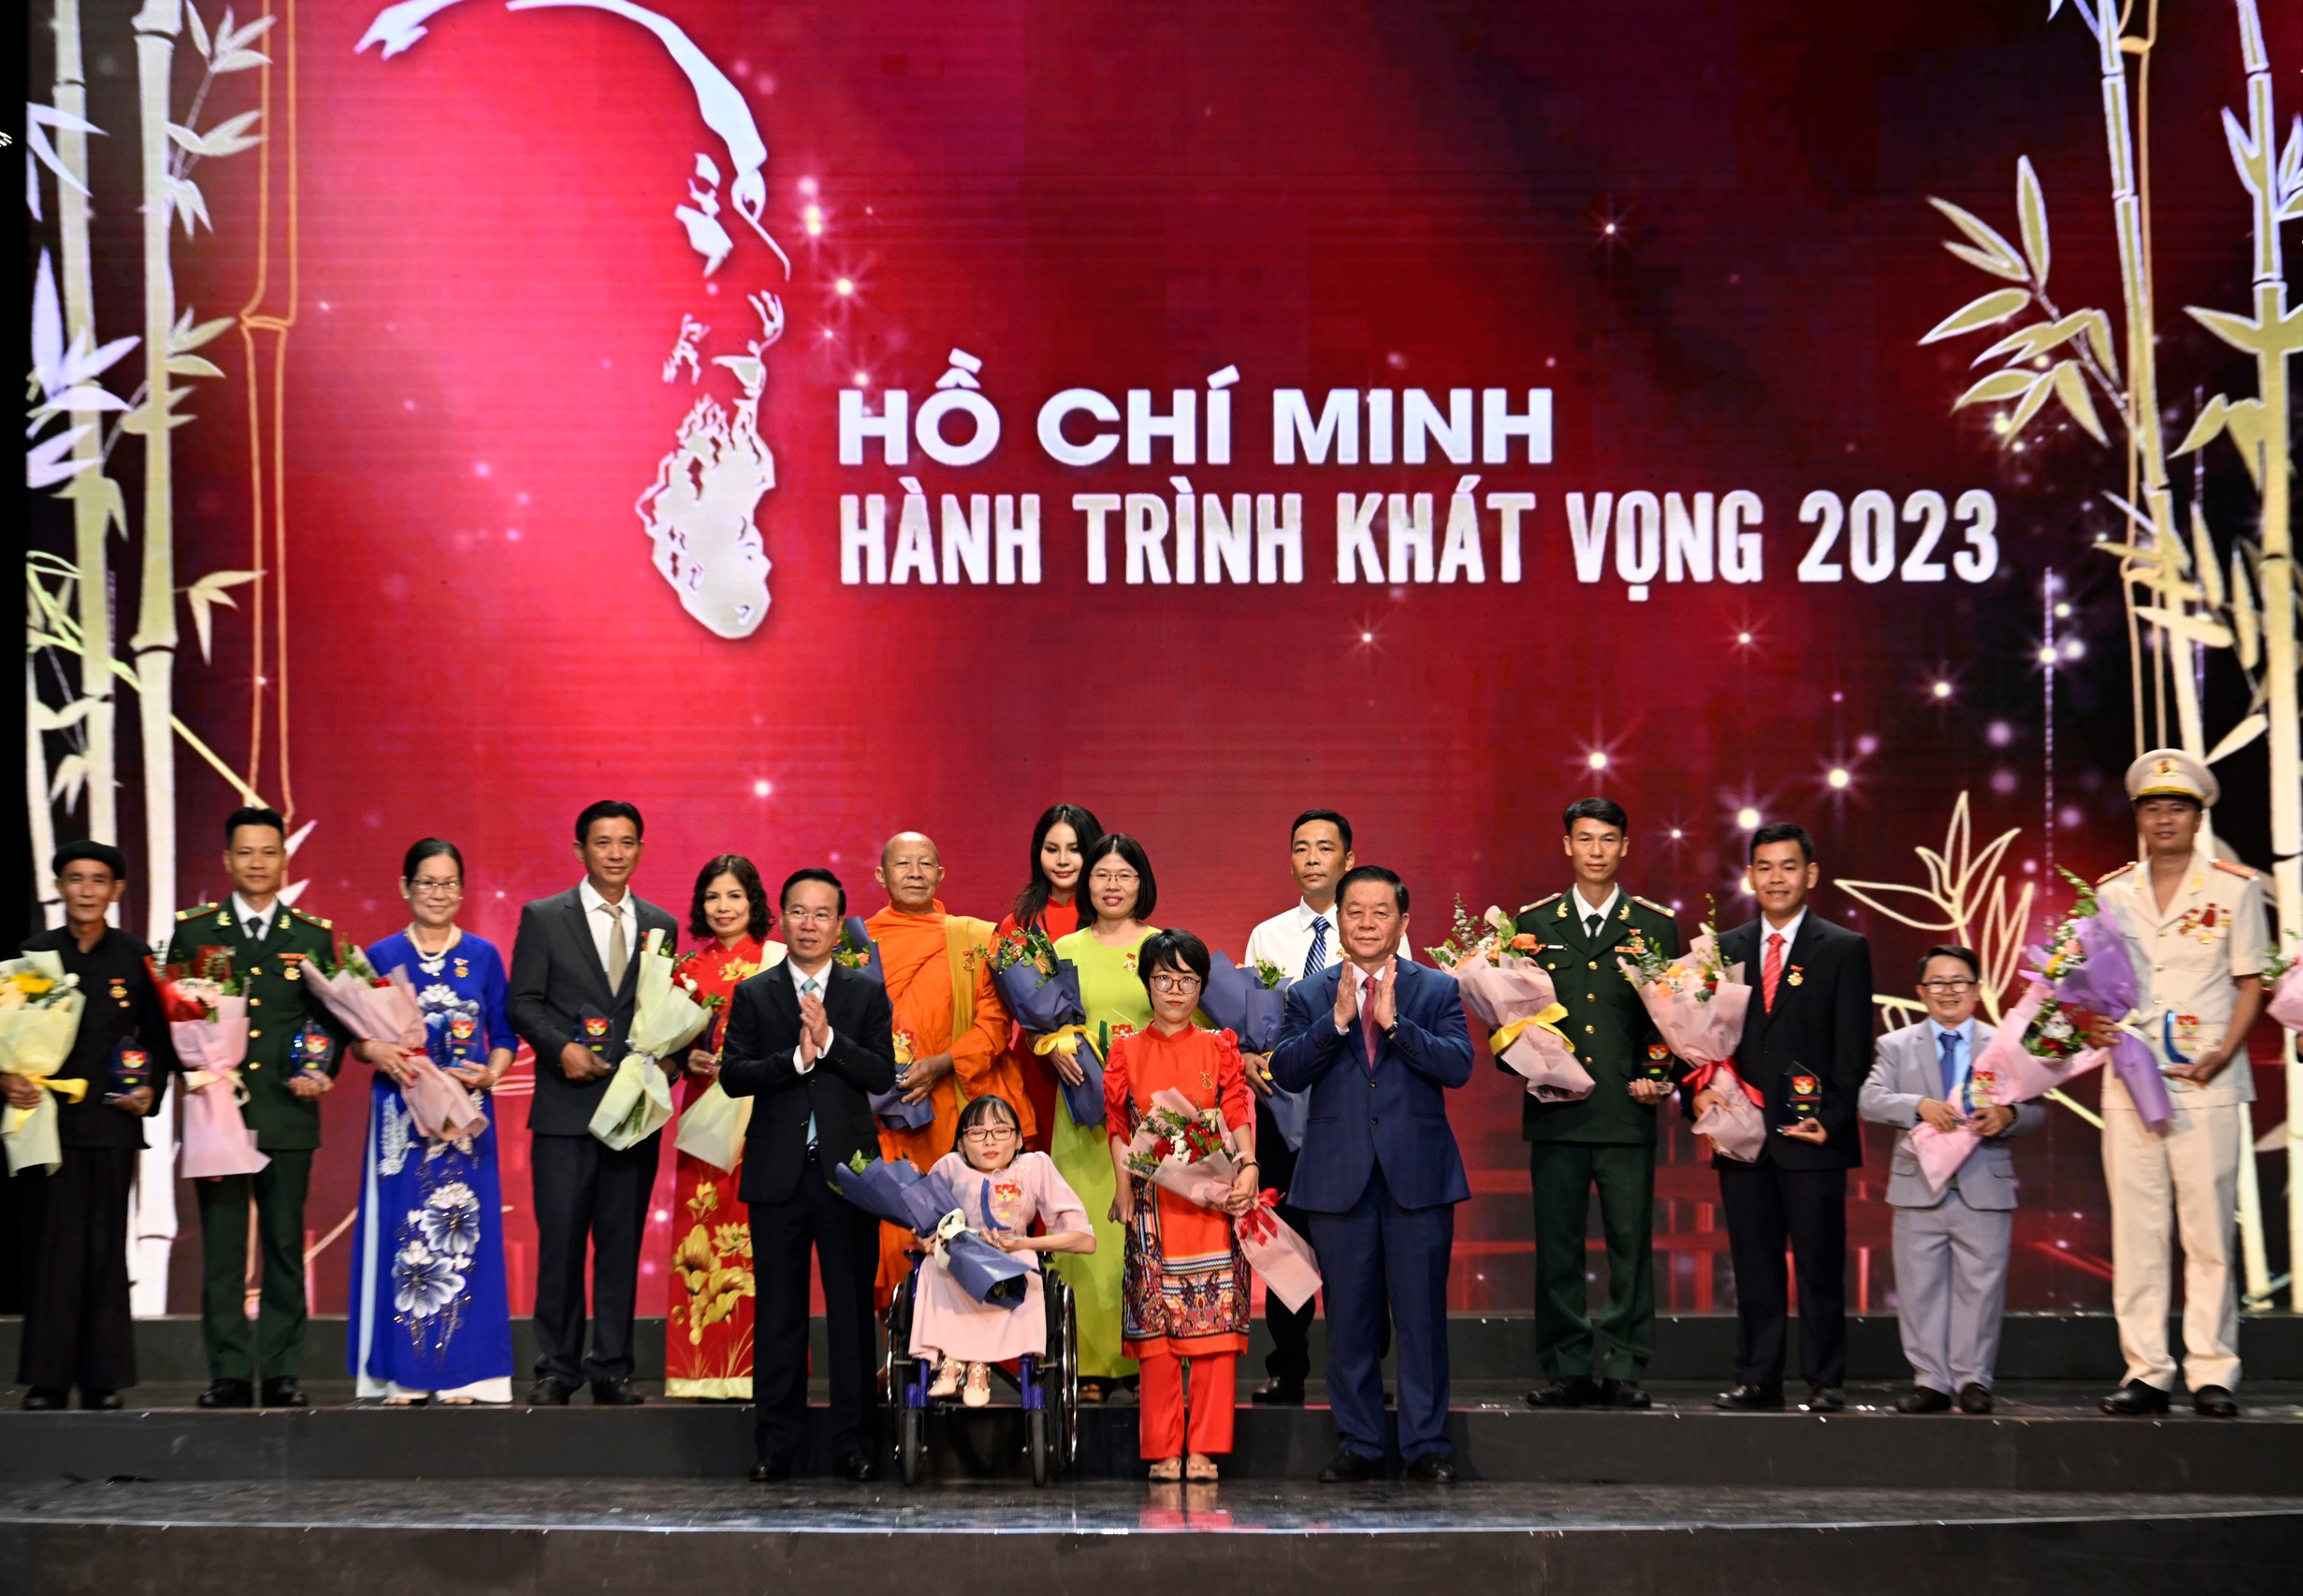 'Hồ Chí Minh - Hành trình khát vọng 2023' tôn vinh điển hình tiêu biểu toàn quốc